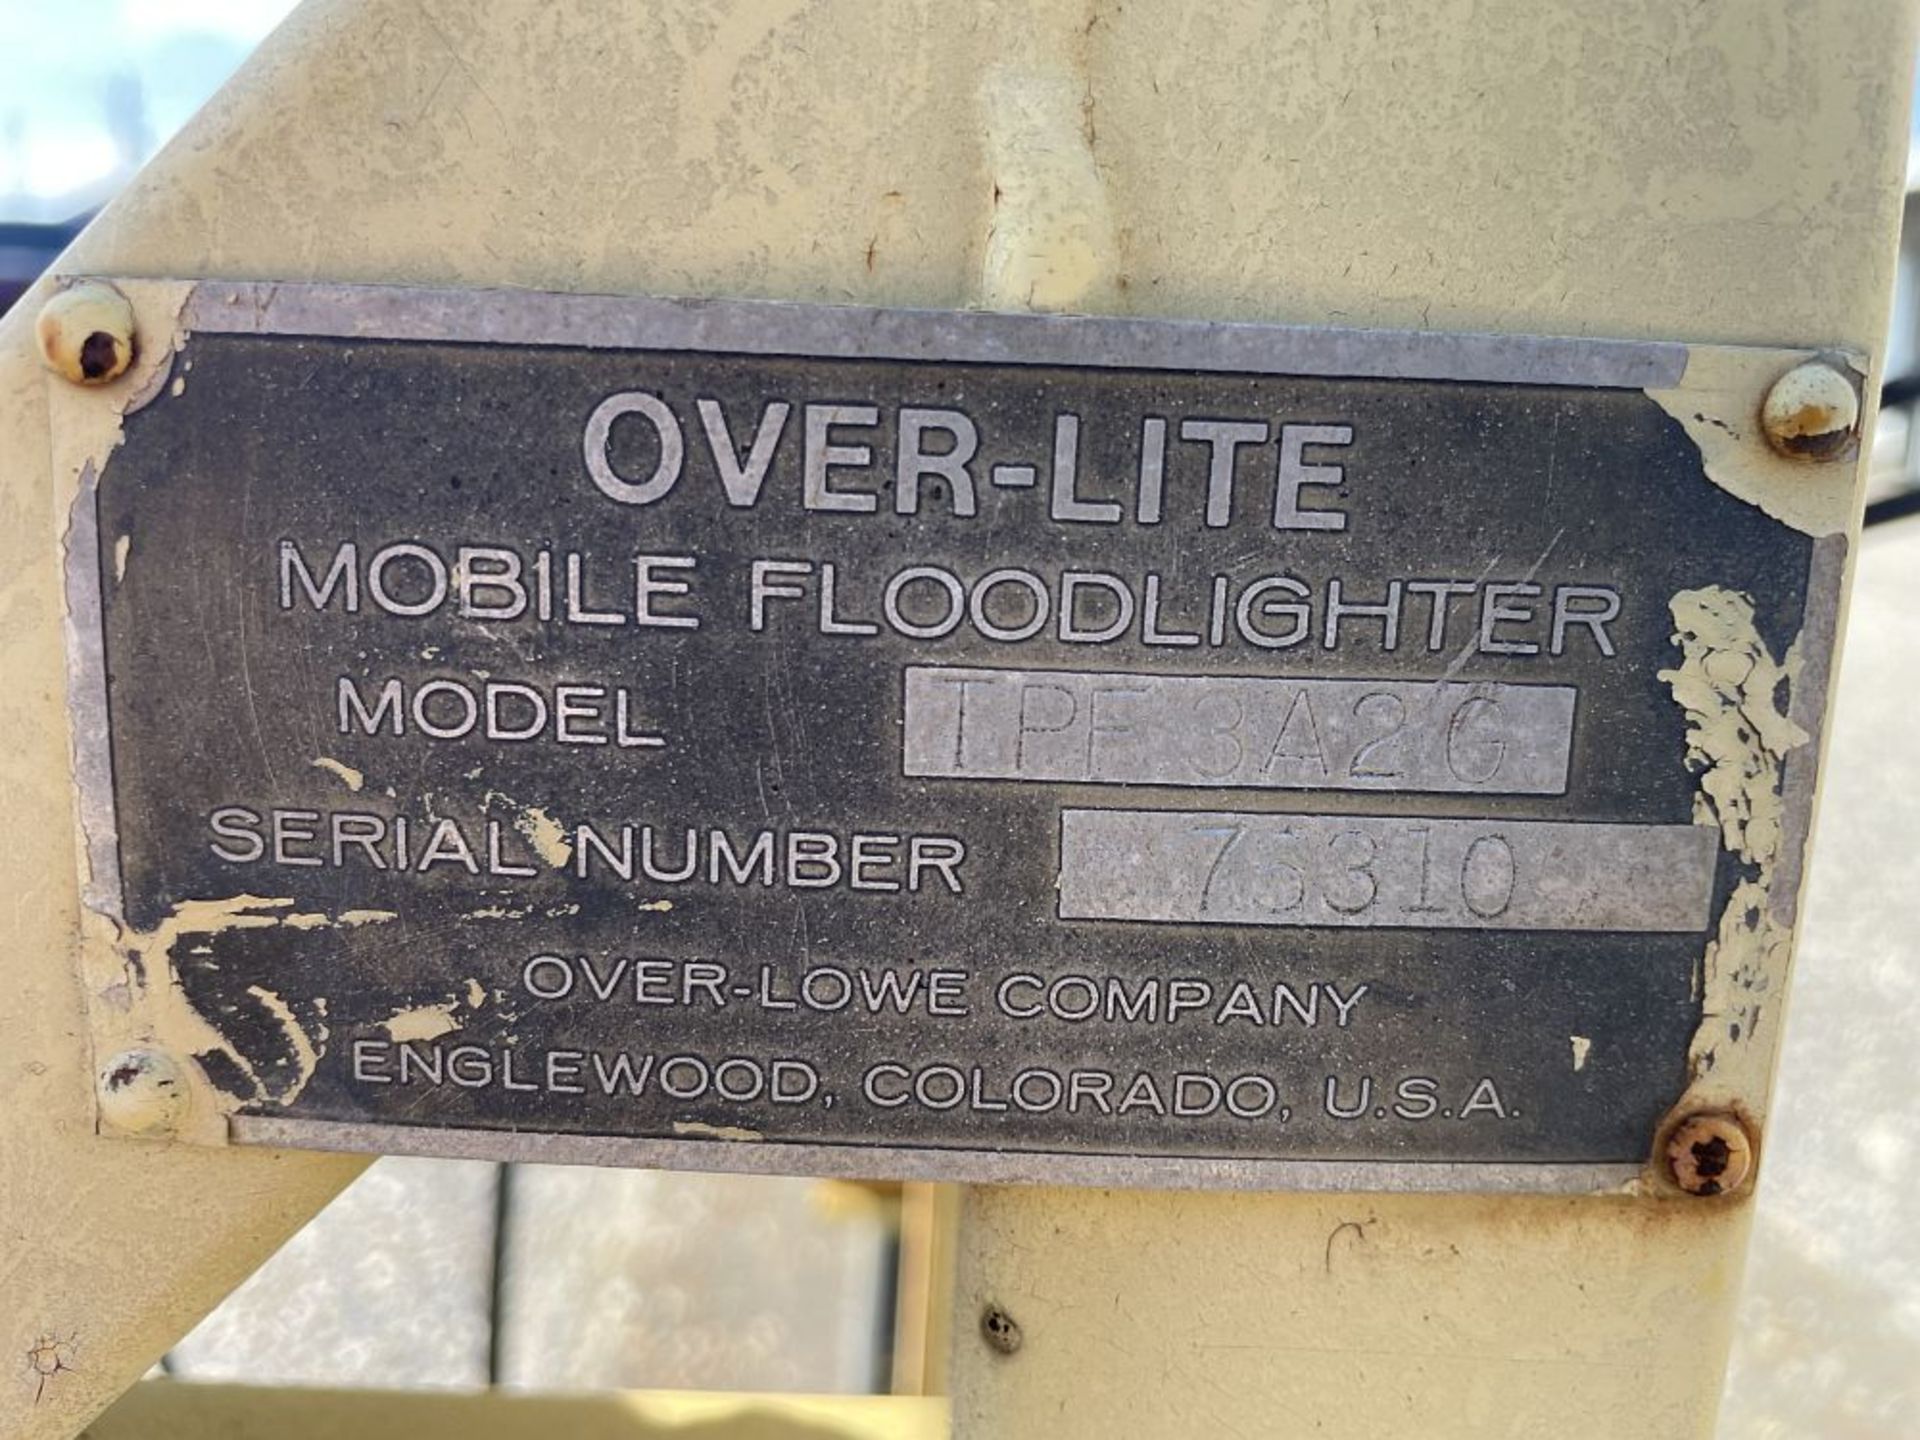 Over-Lite Mobile Floodlighter - Image 3 of 3